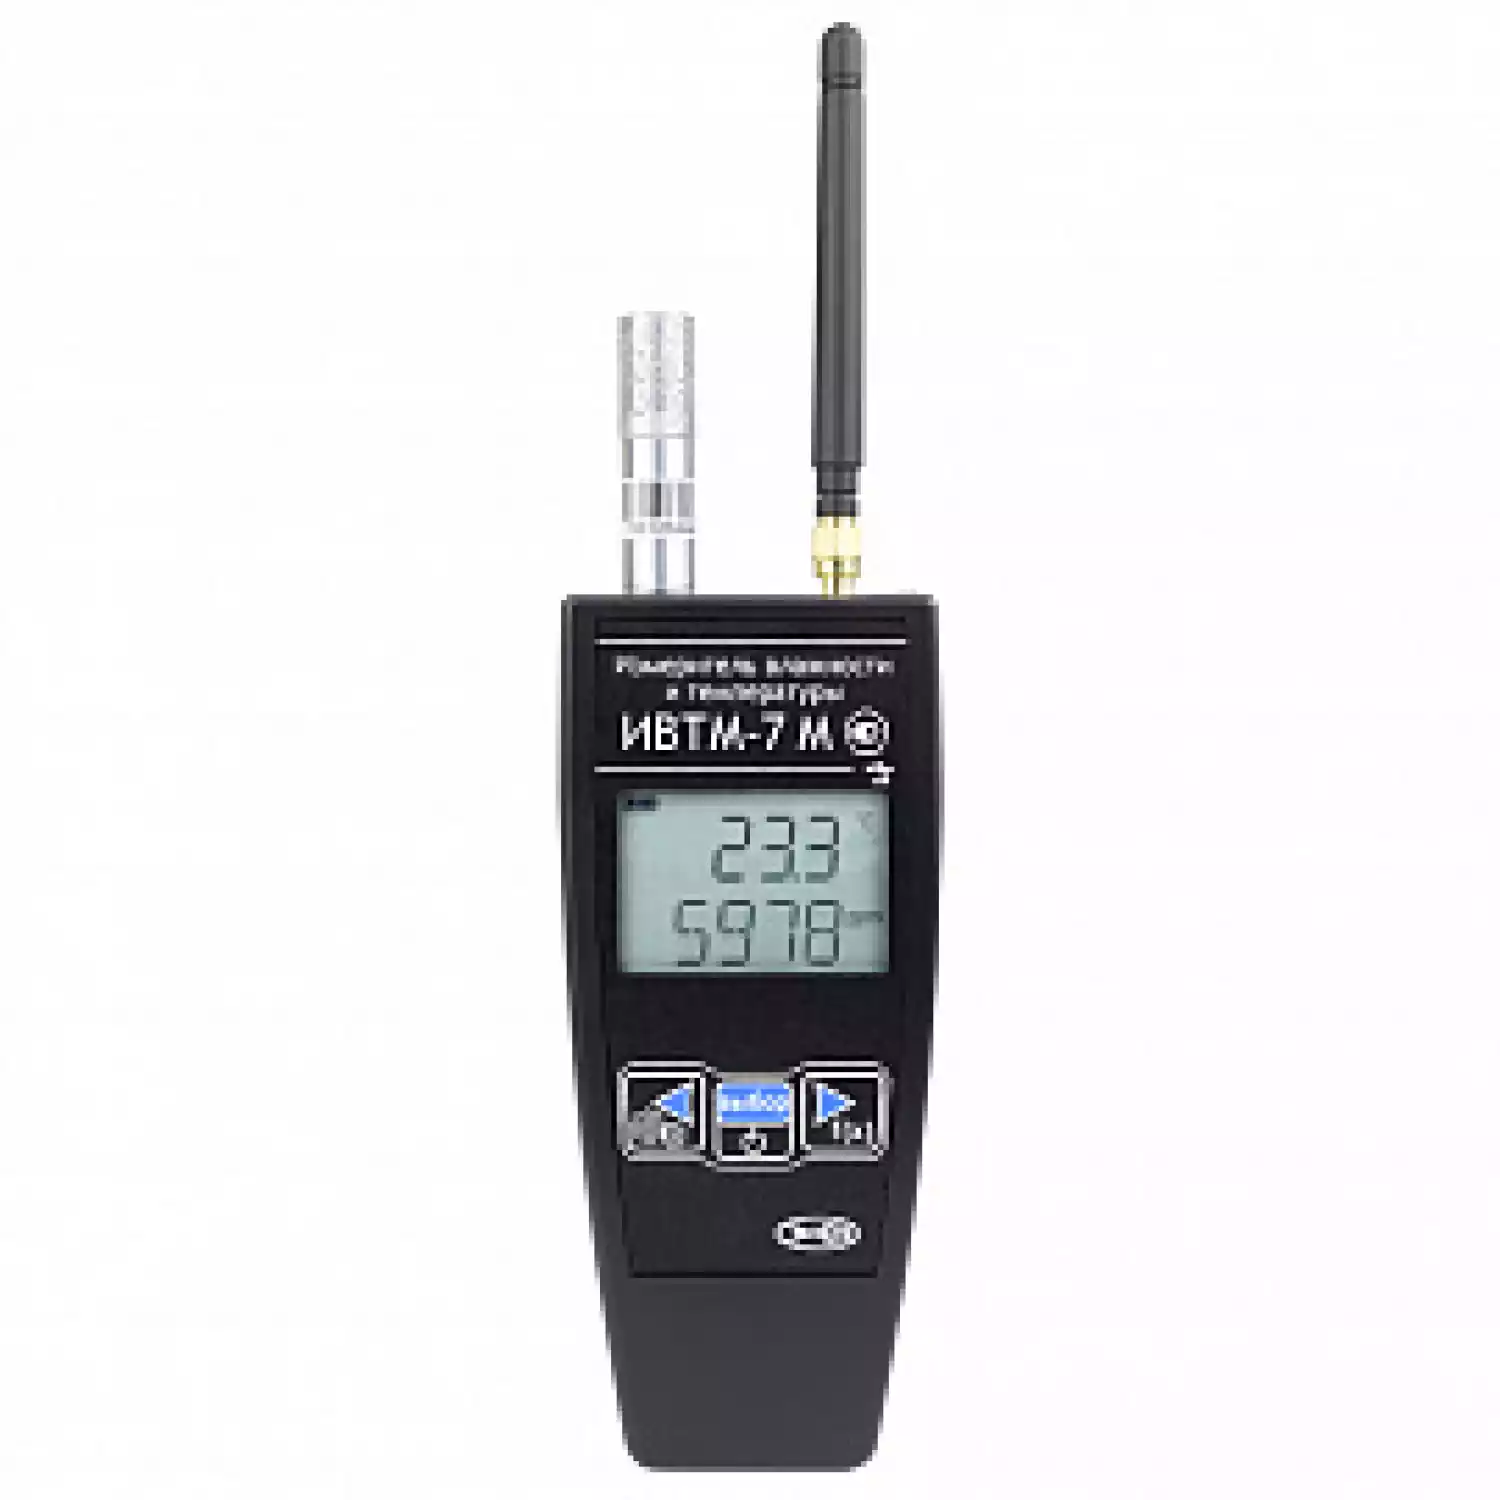 Термогигрометр ИВТМ-7 М 4-1 для производственных складов - 1